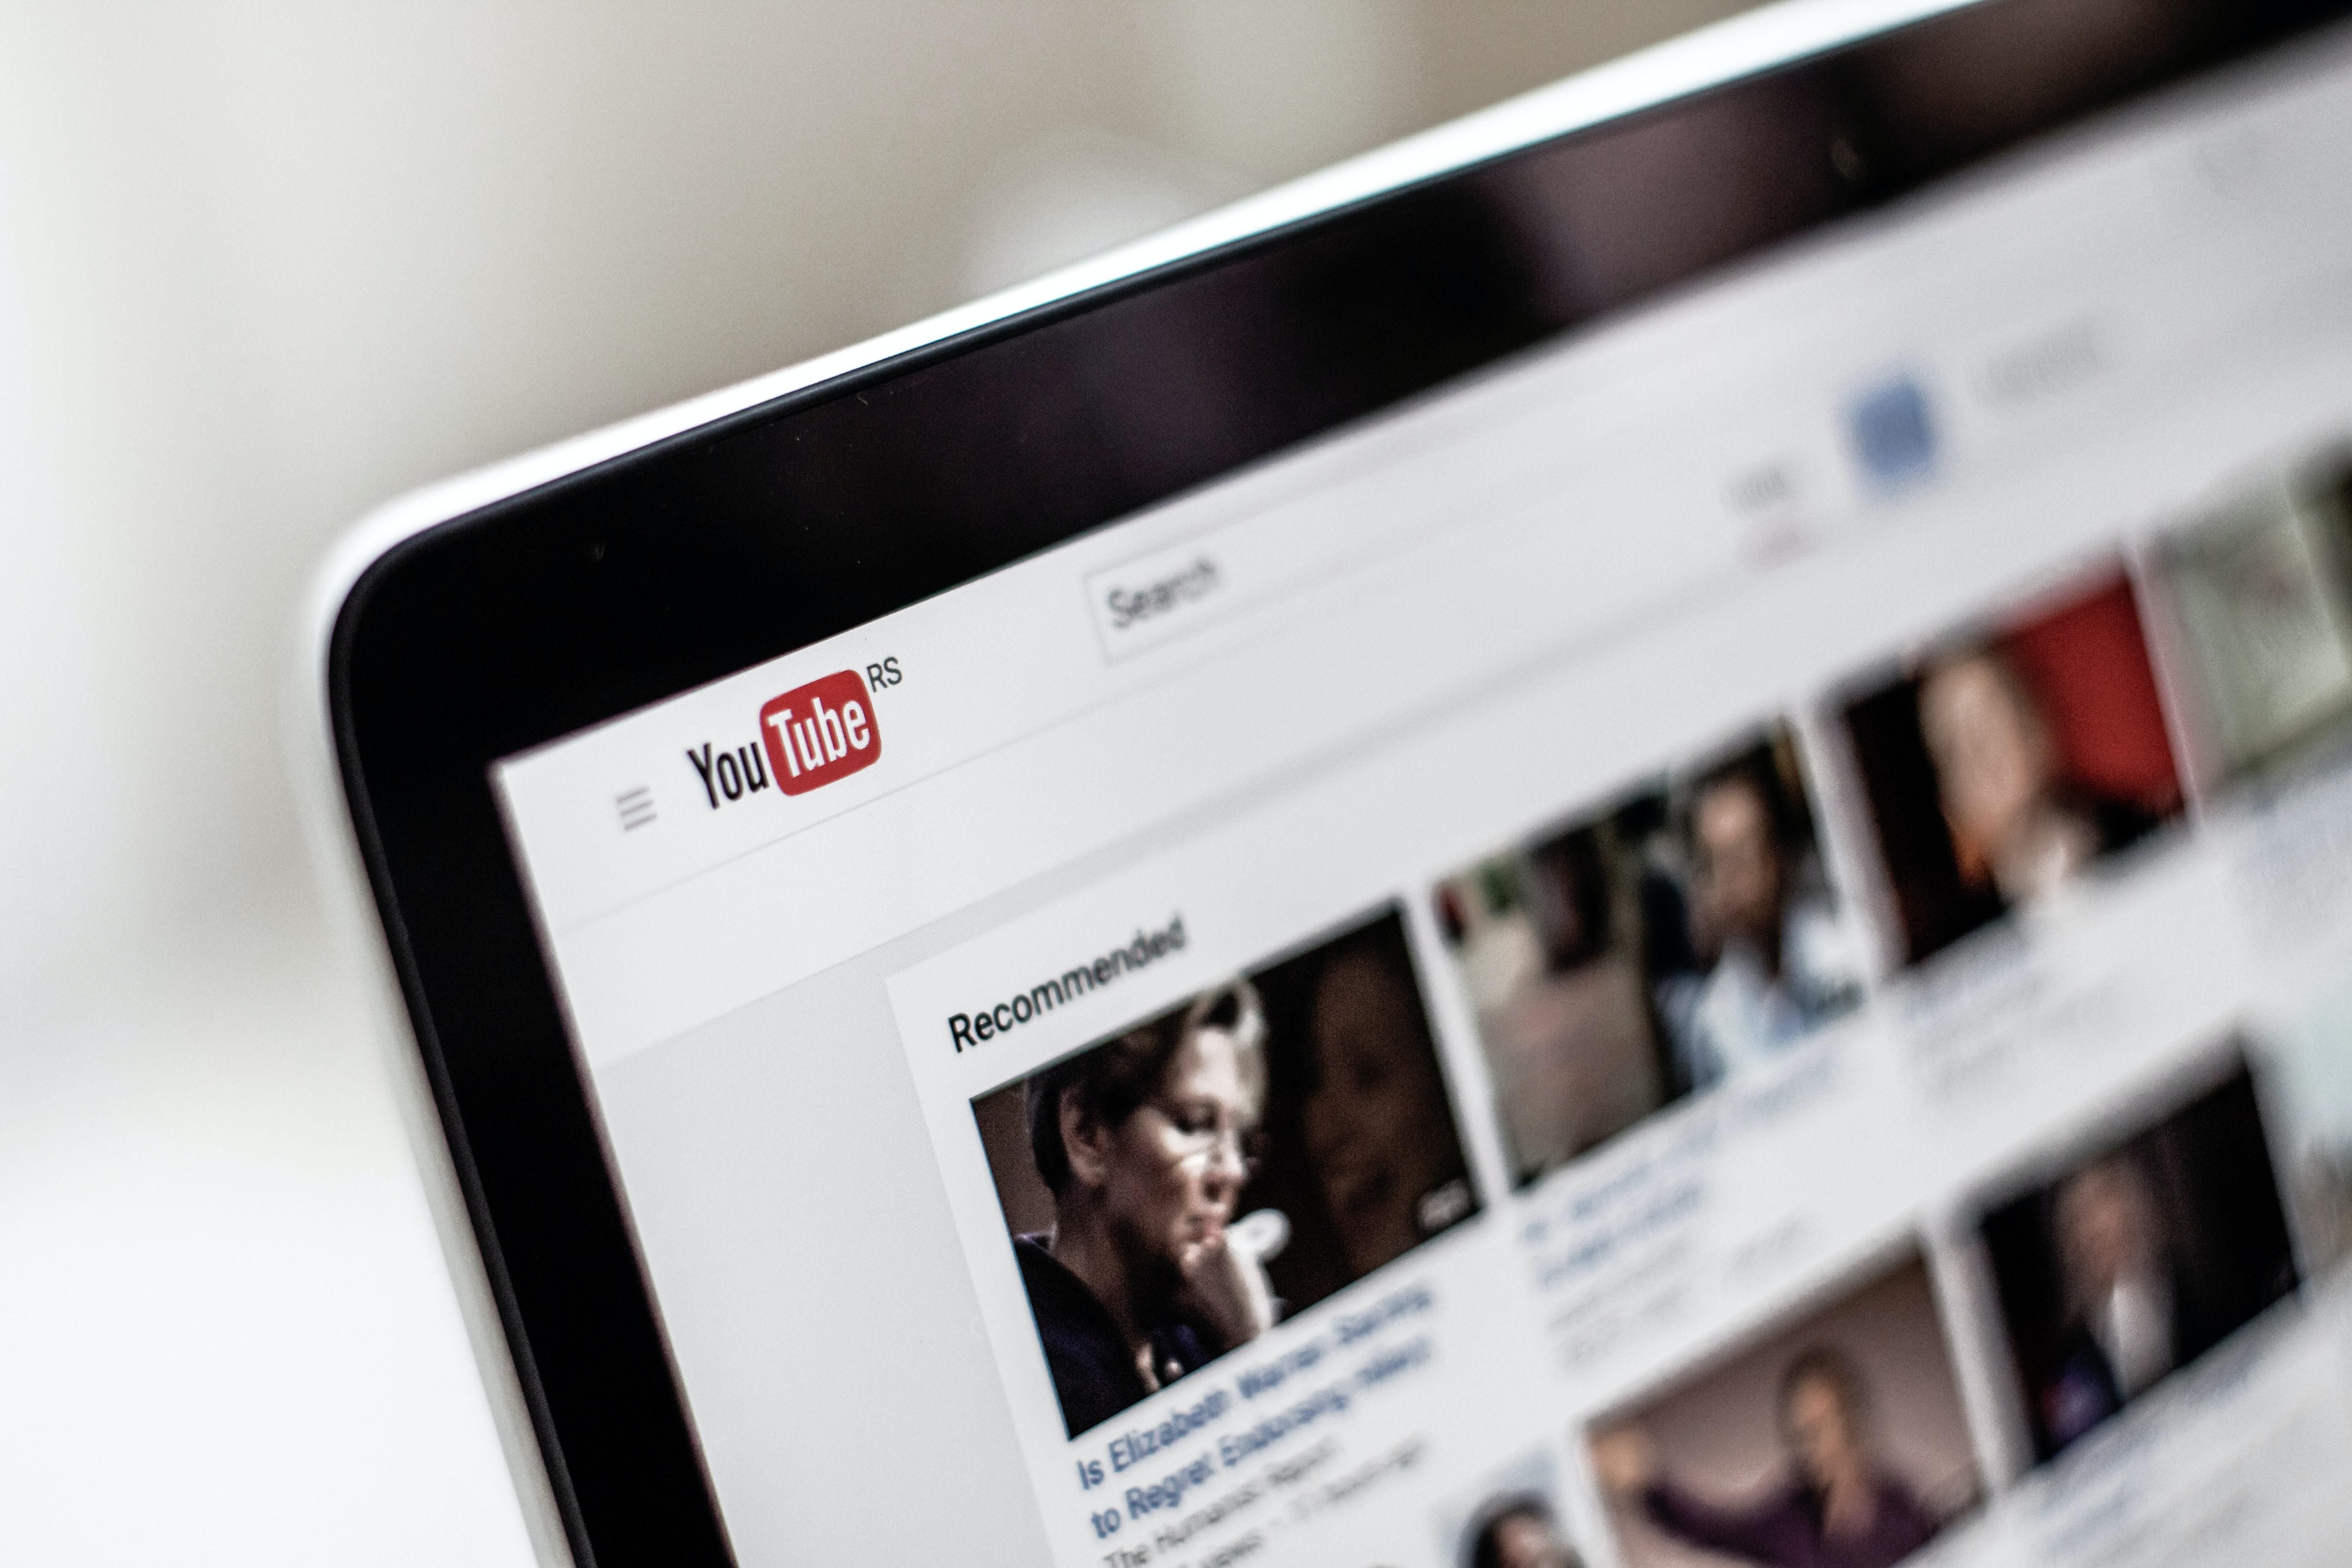 Заробляєте на YouTube – платіть податки: що відомо про рішення Google